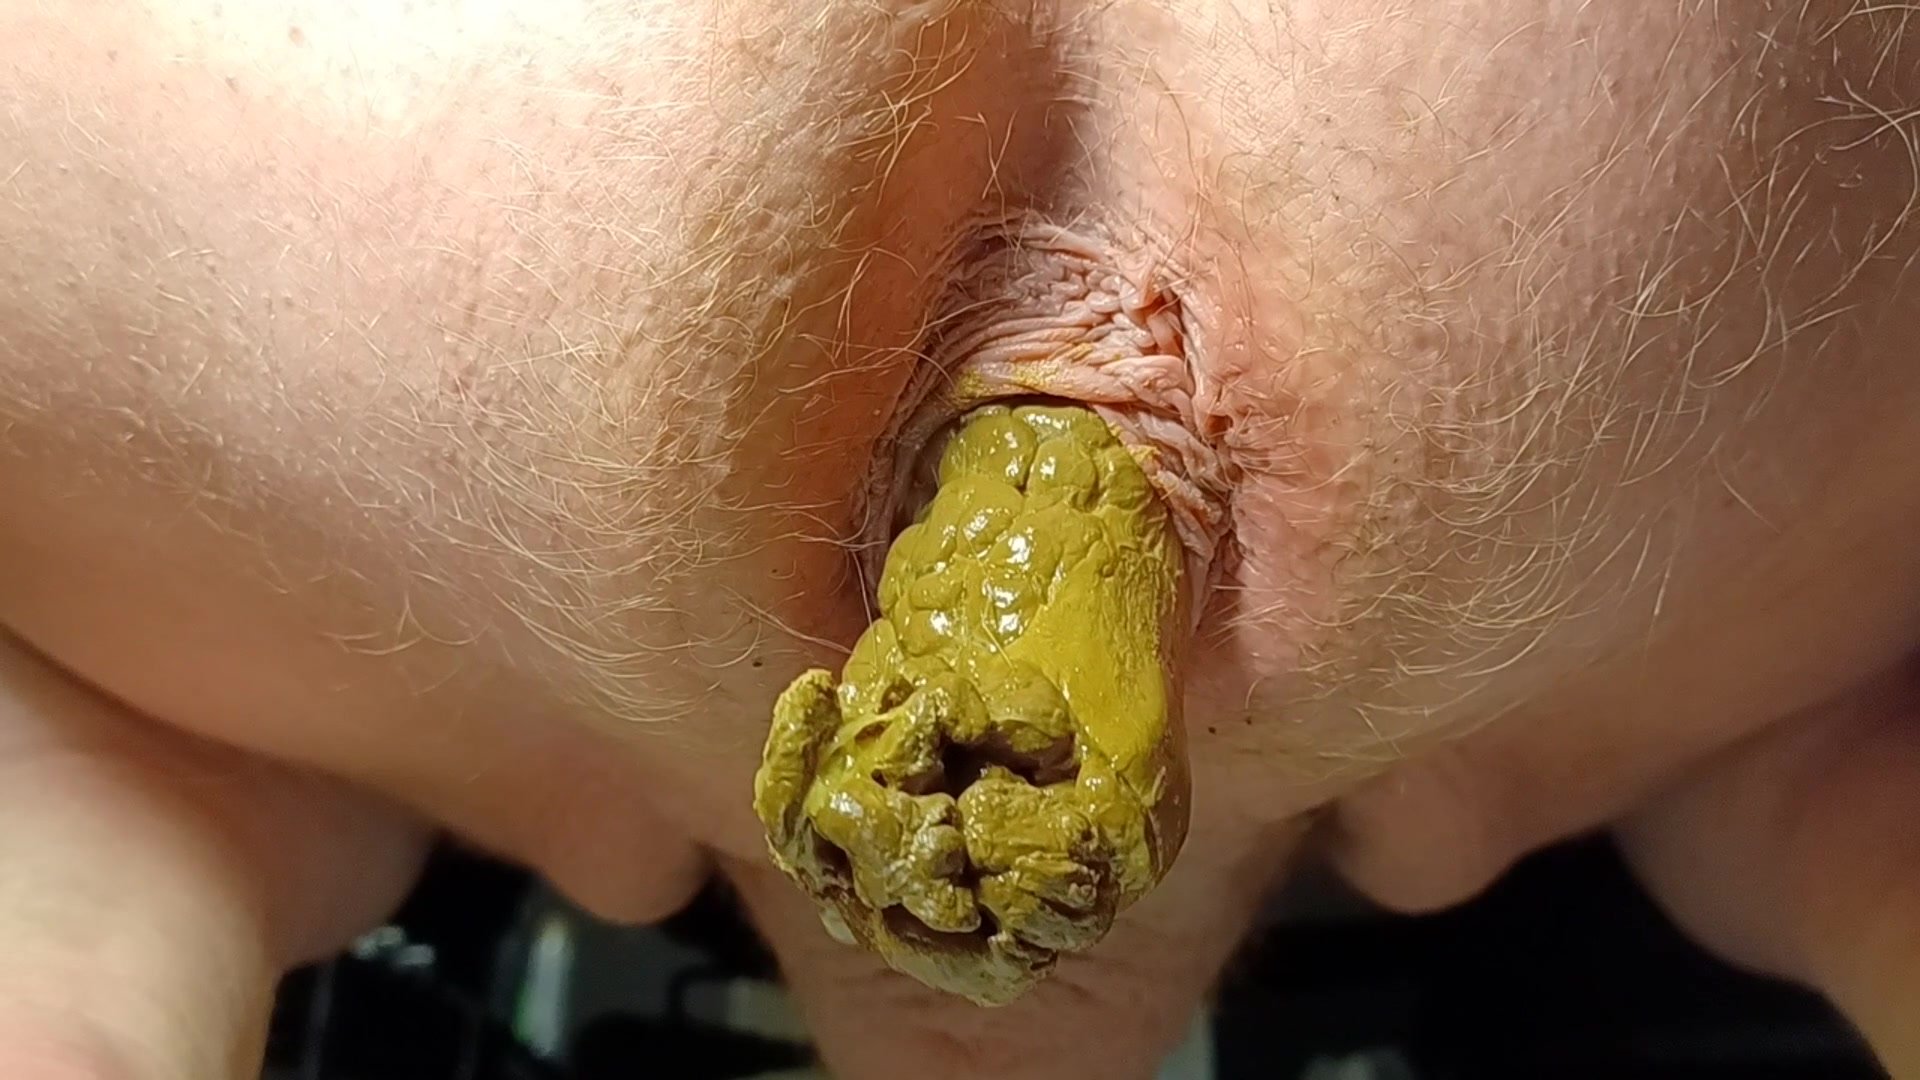 Poop video 51